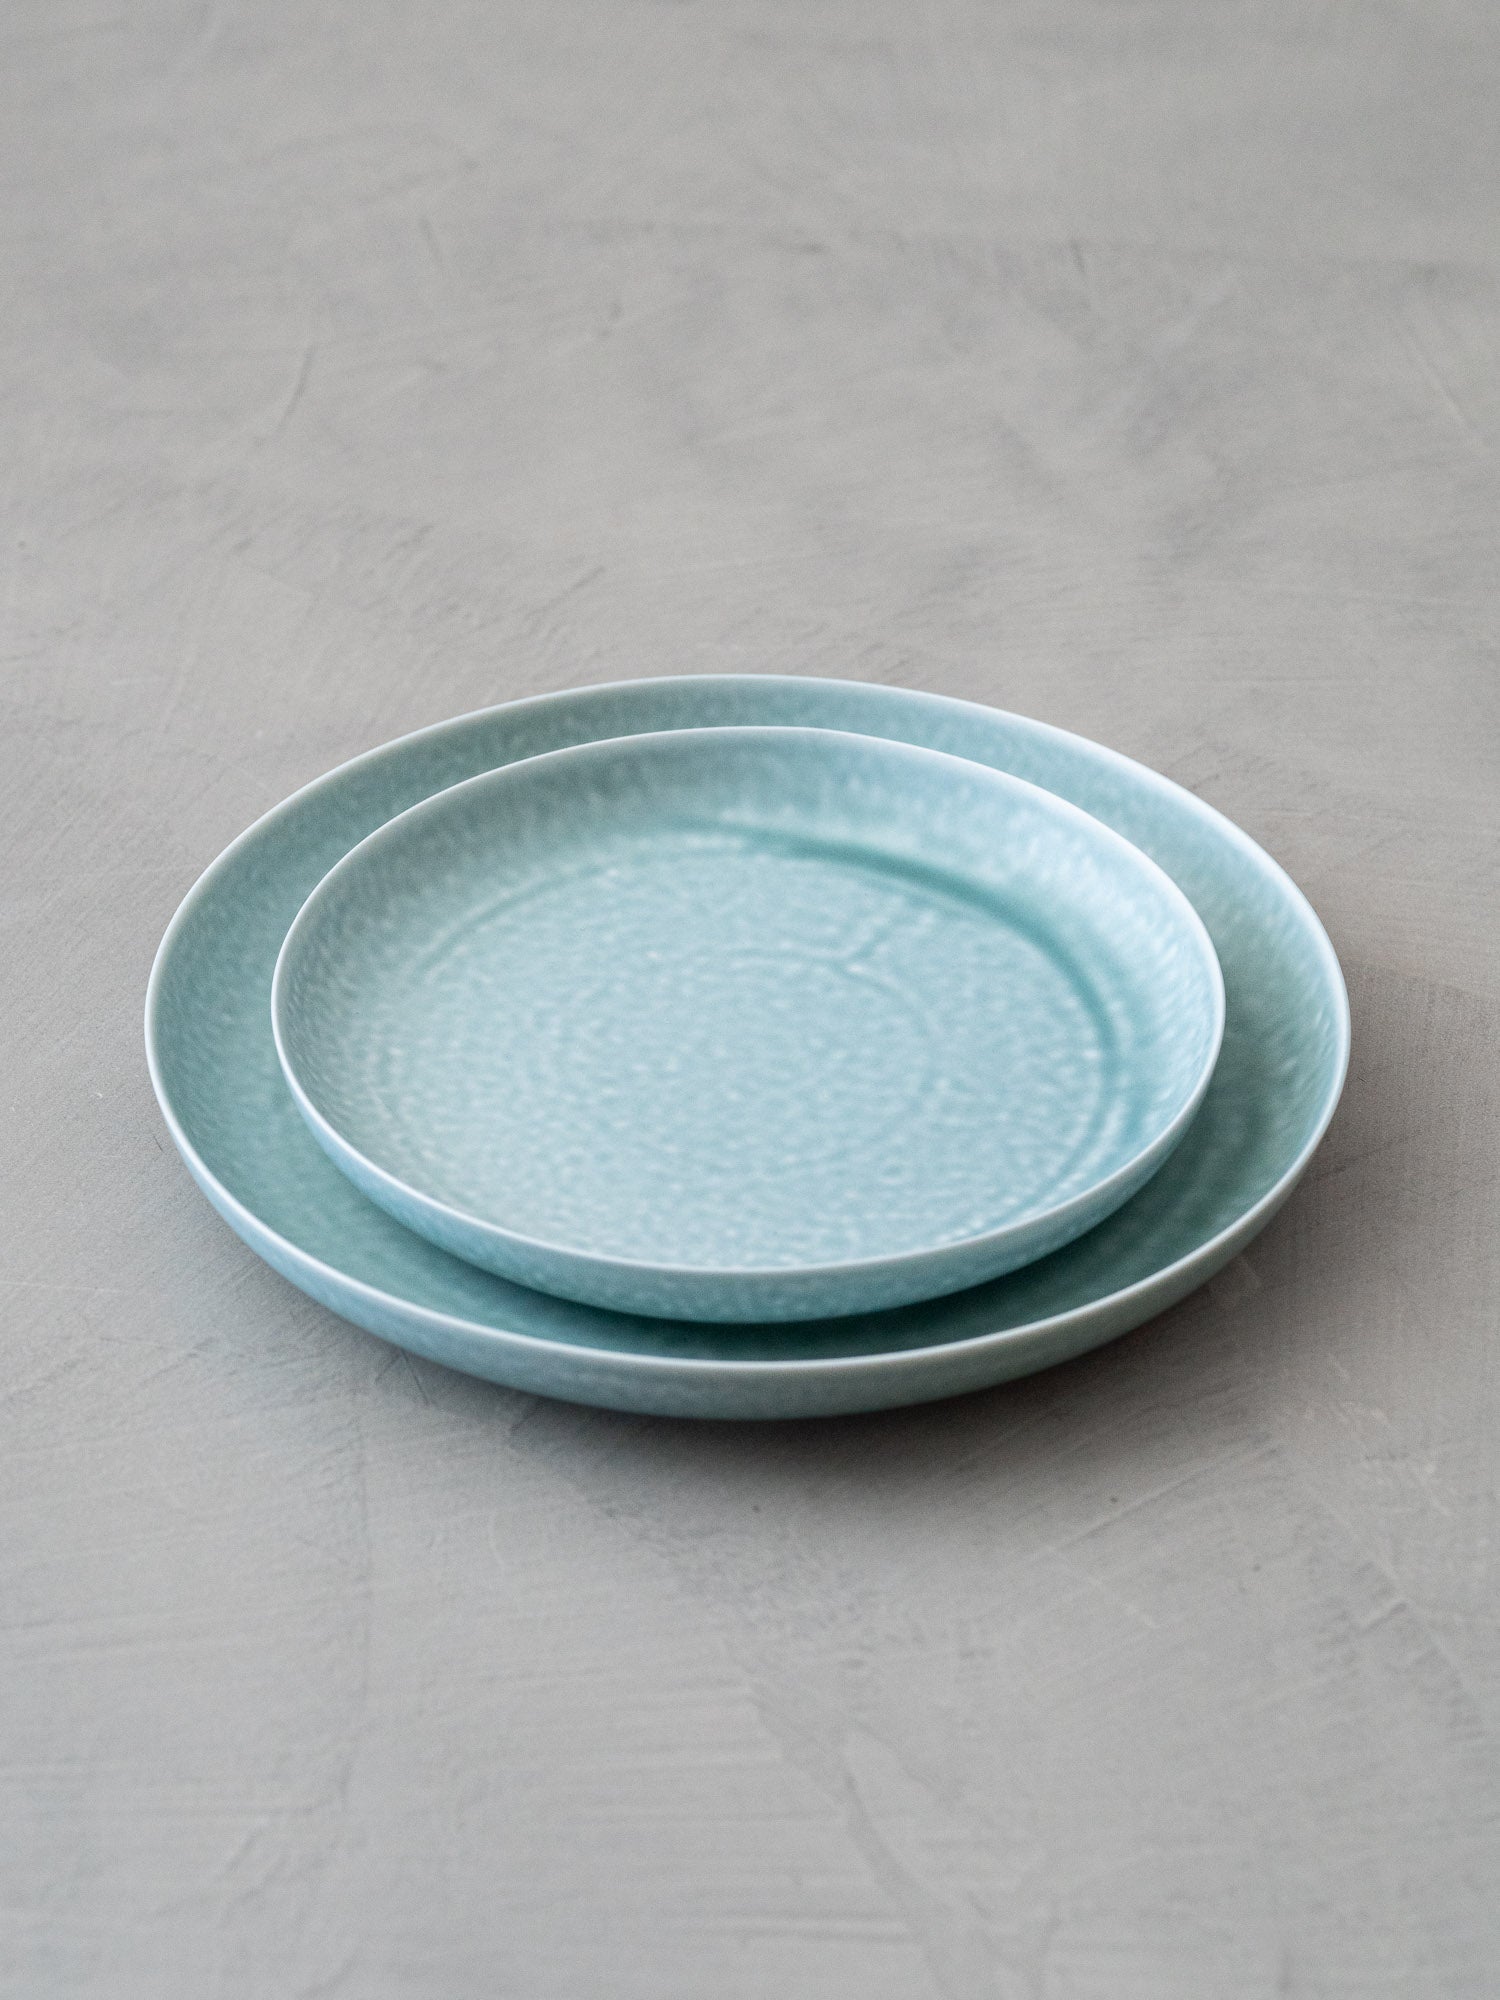 ReIRABO Dinner Plate – Spring Mint Green